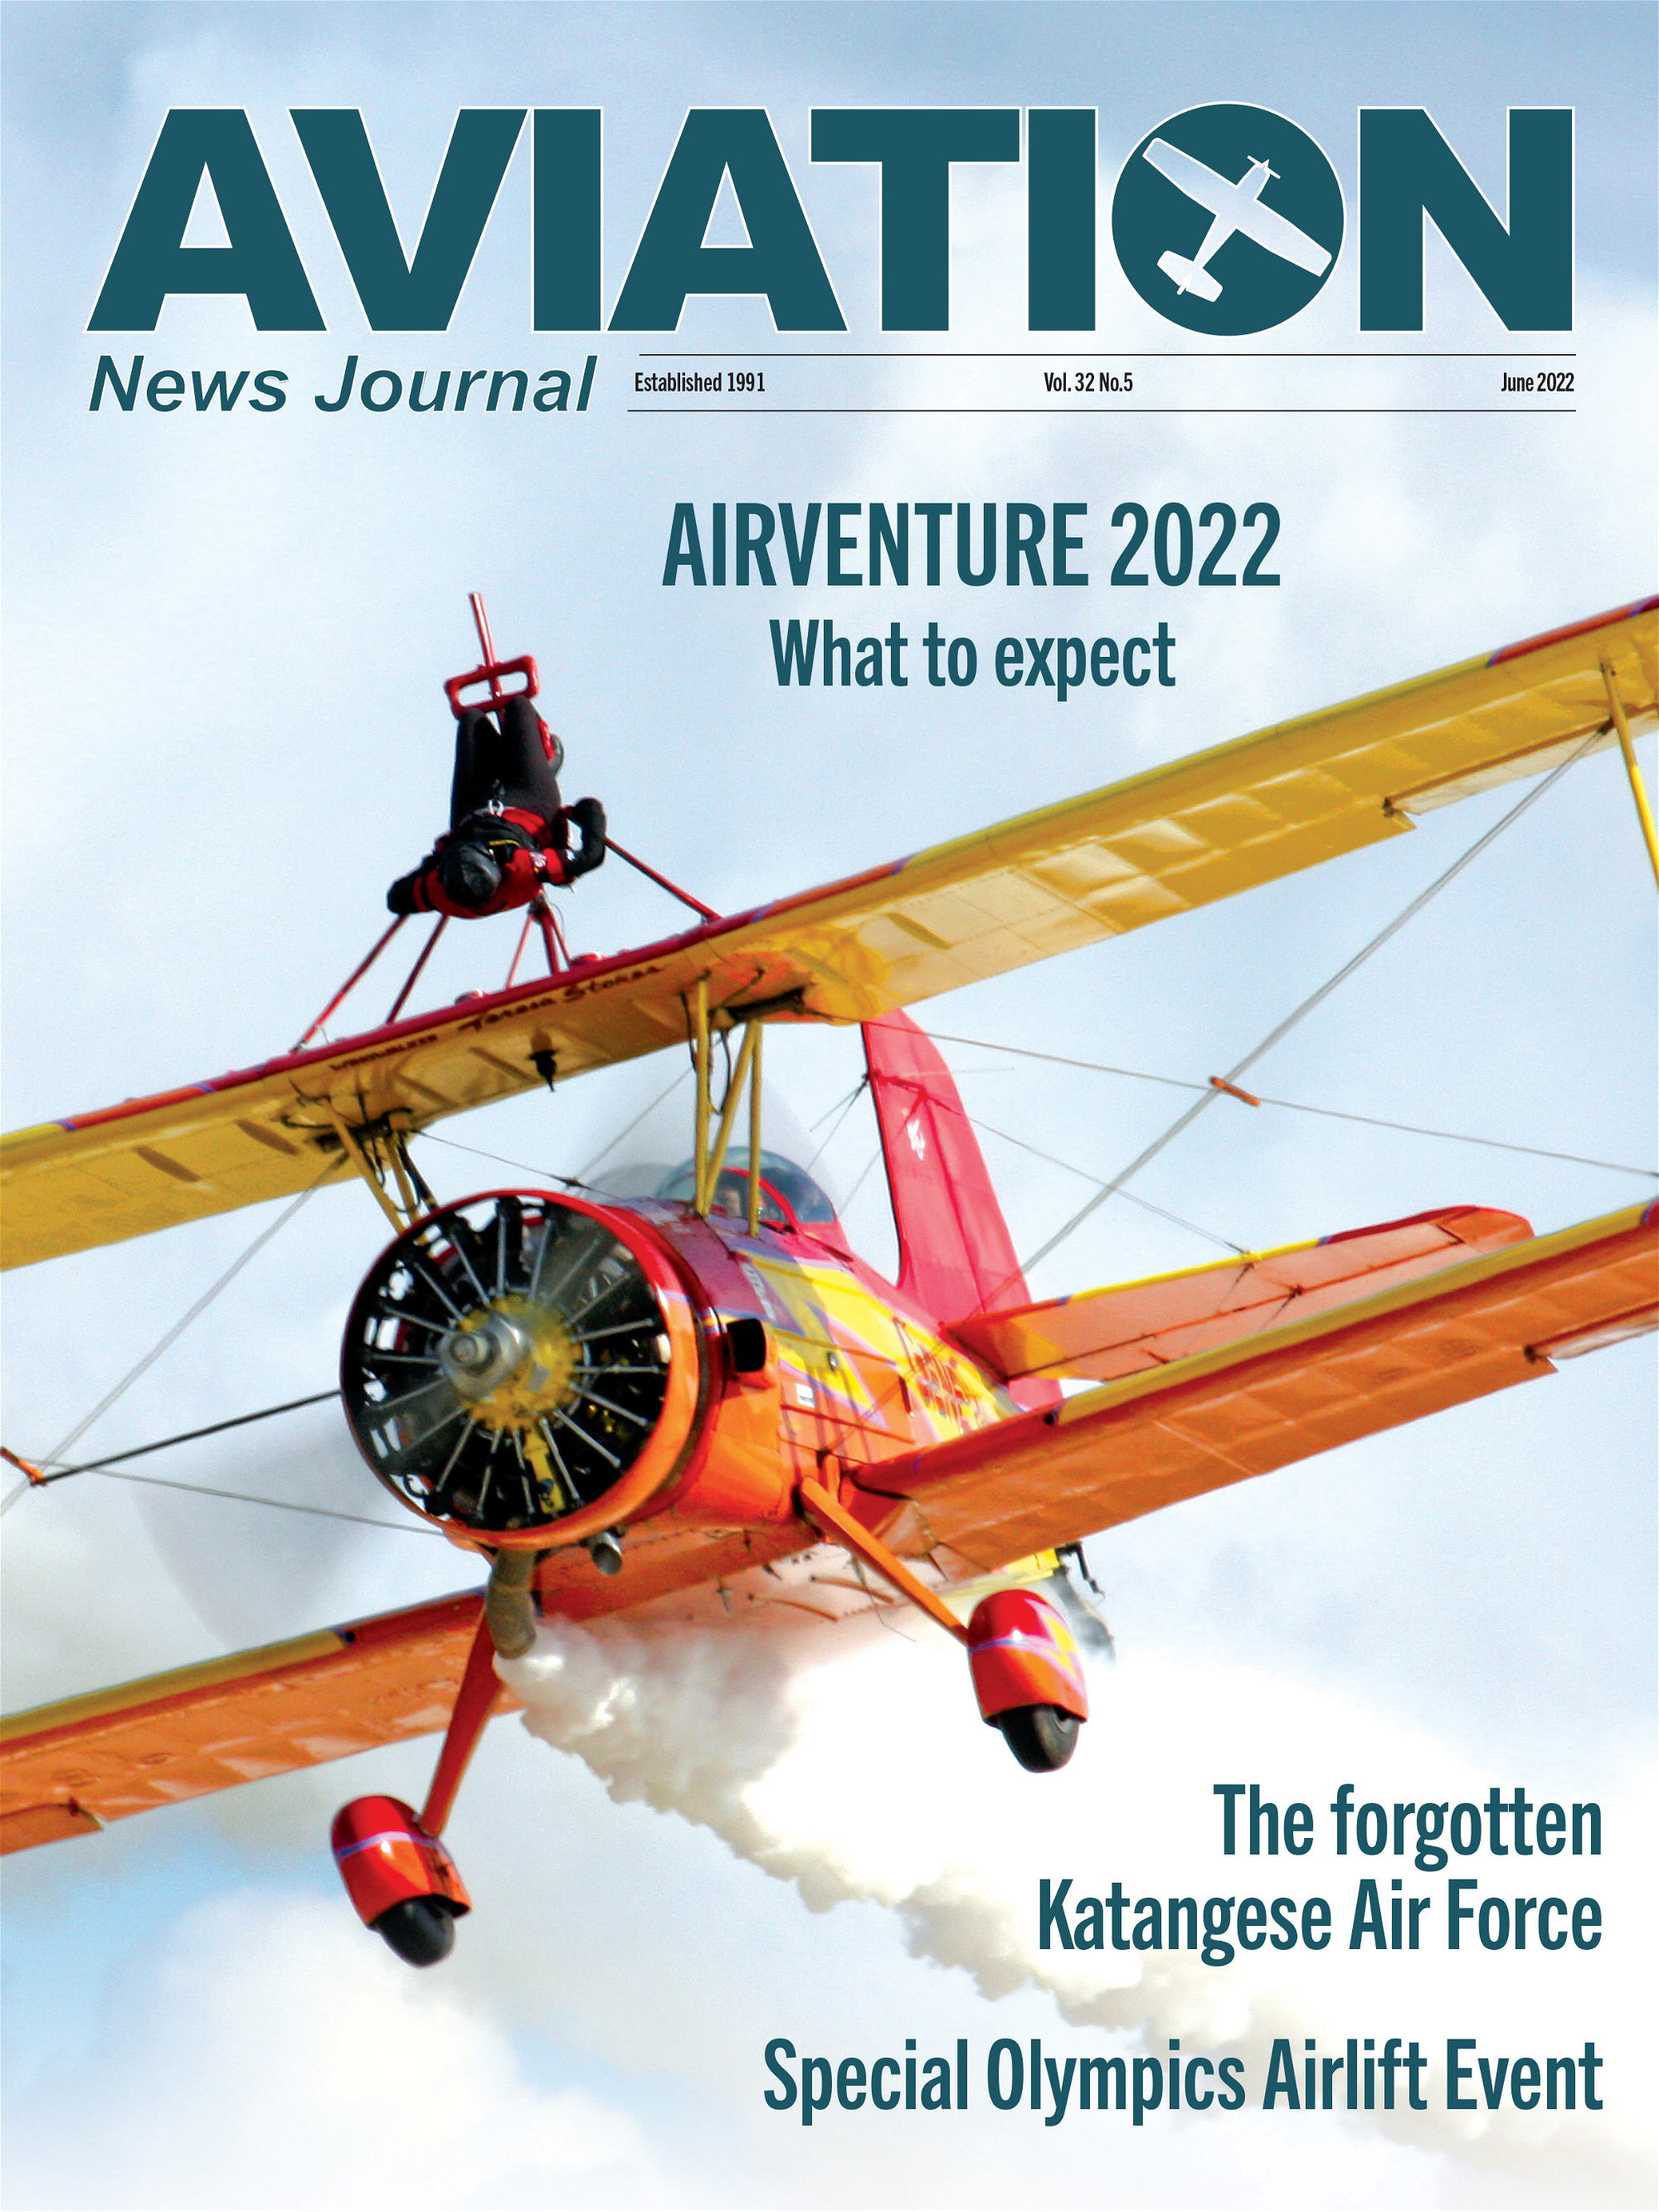 Aviation News Journal - June 2022